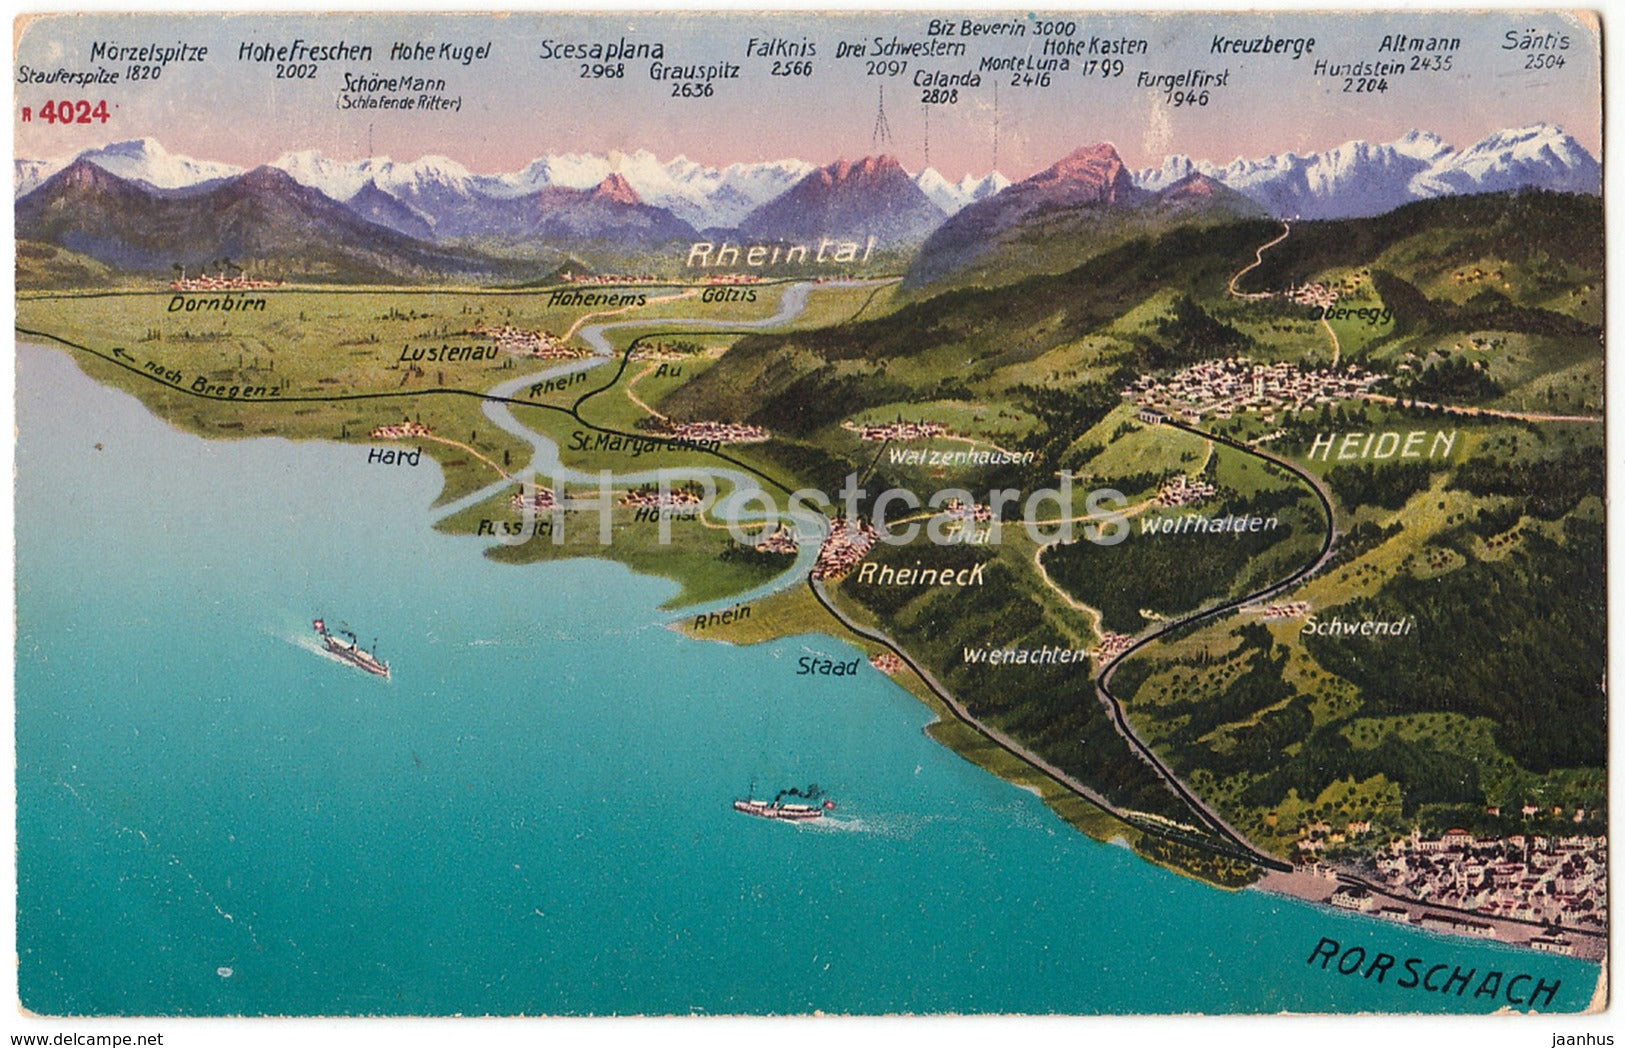 Rheintal - Rorschach - Heiden - Rheineck - map - R 4024 - Switzerland - used - JH Postcards